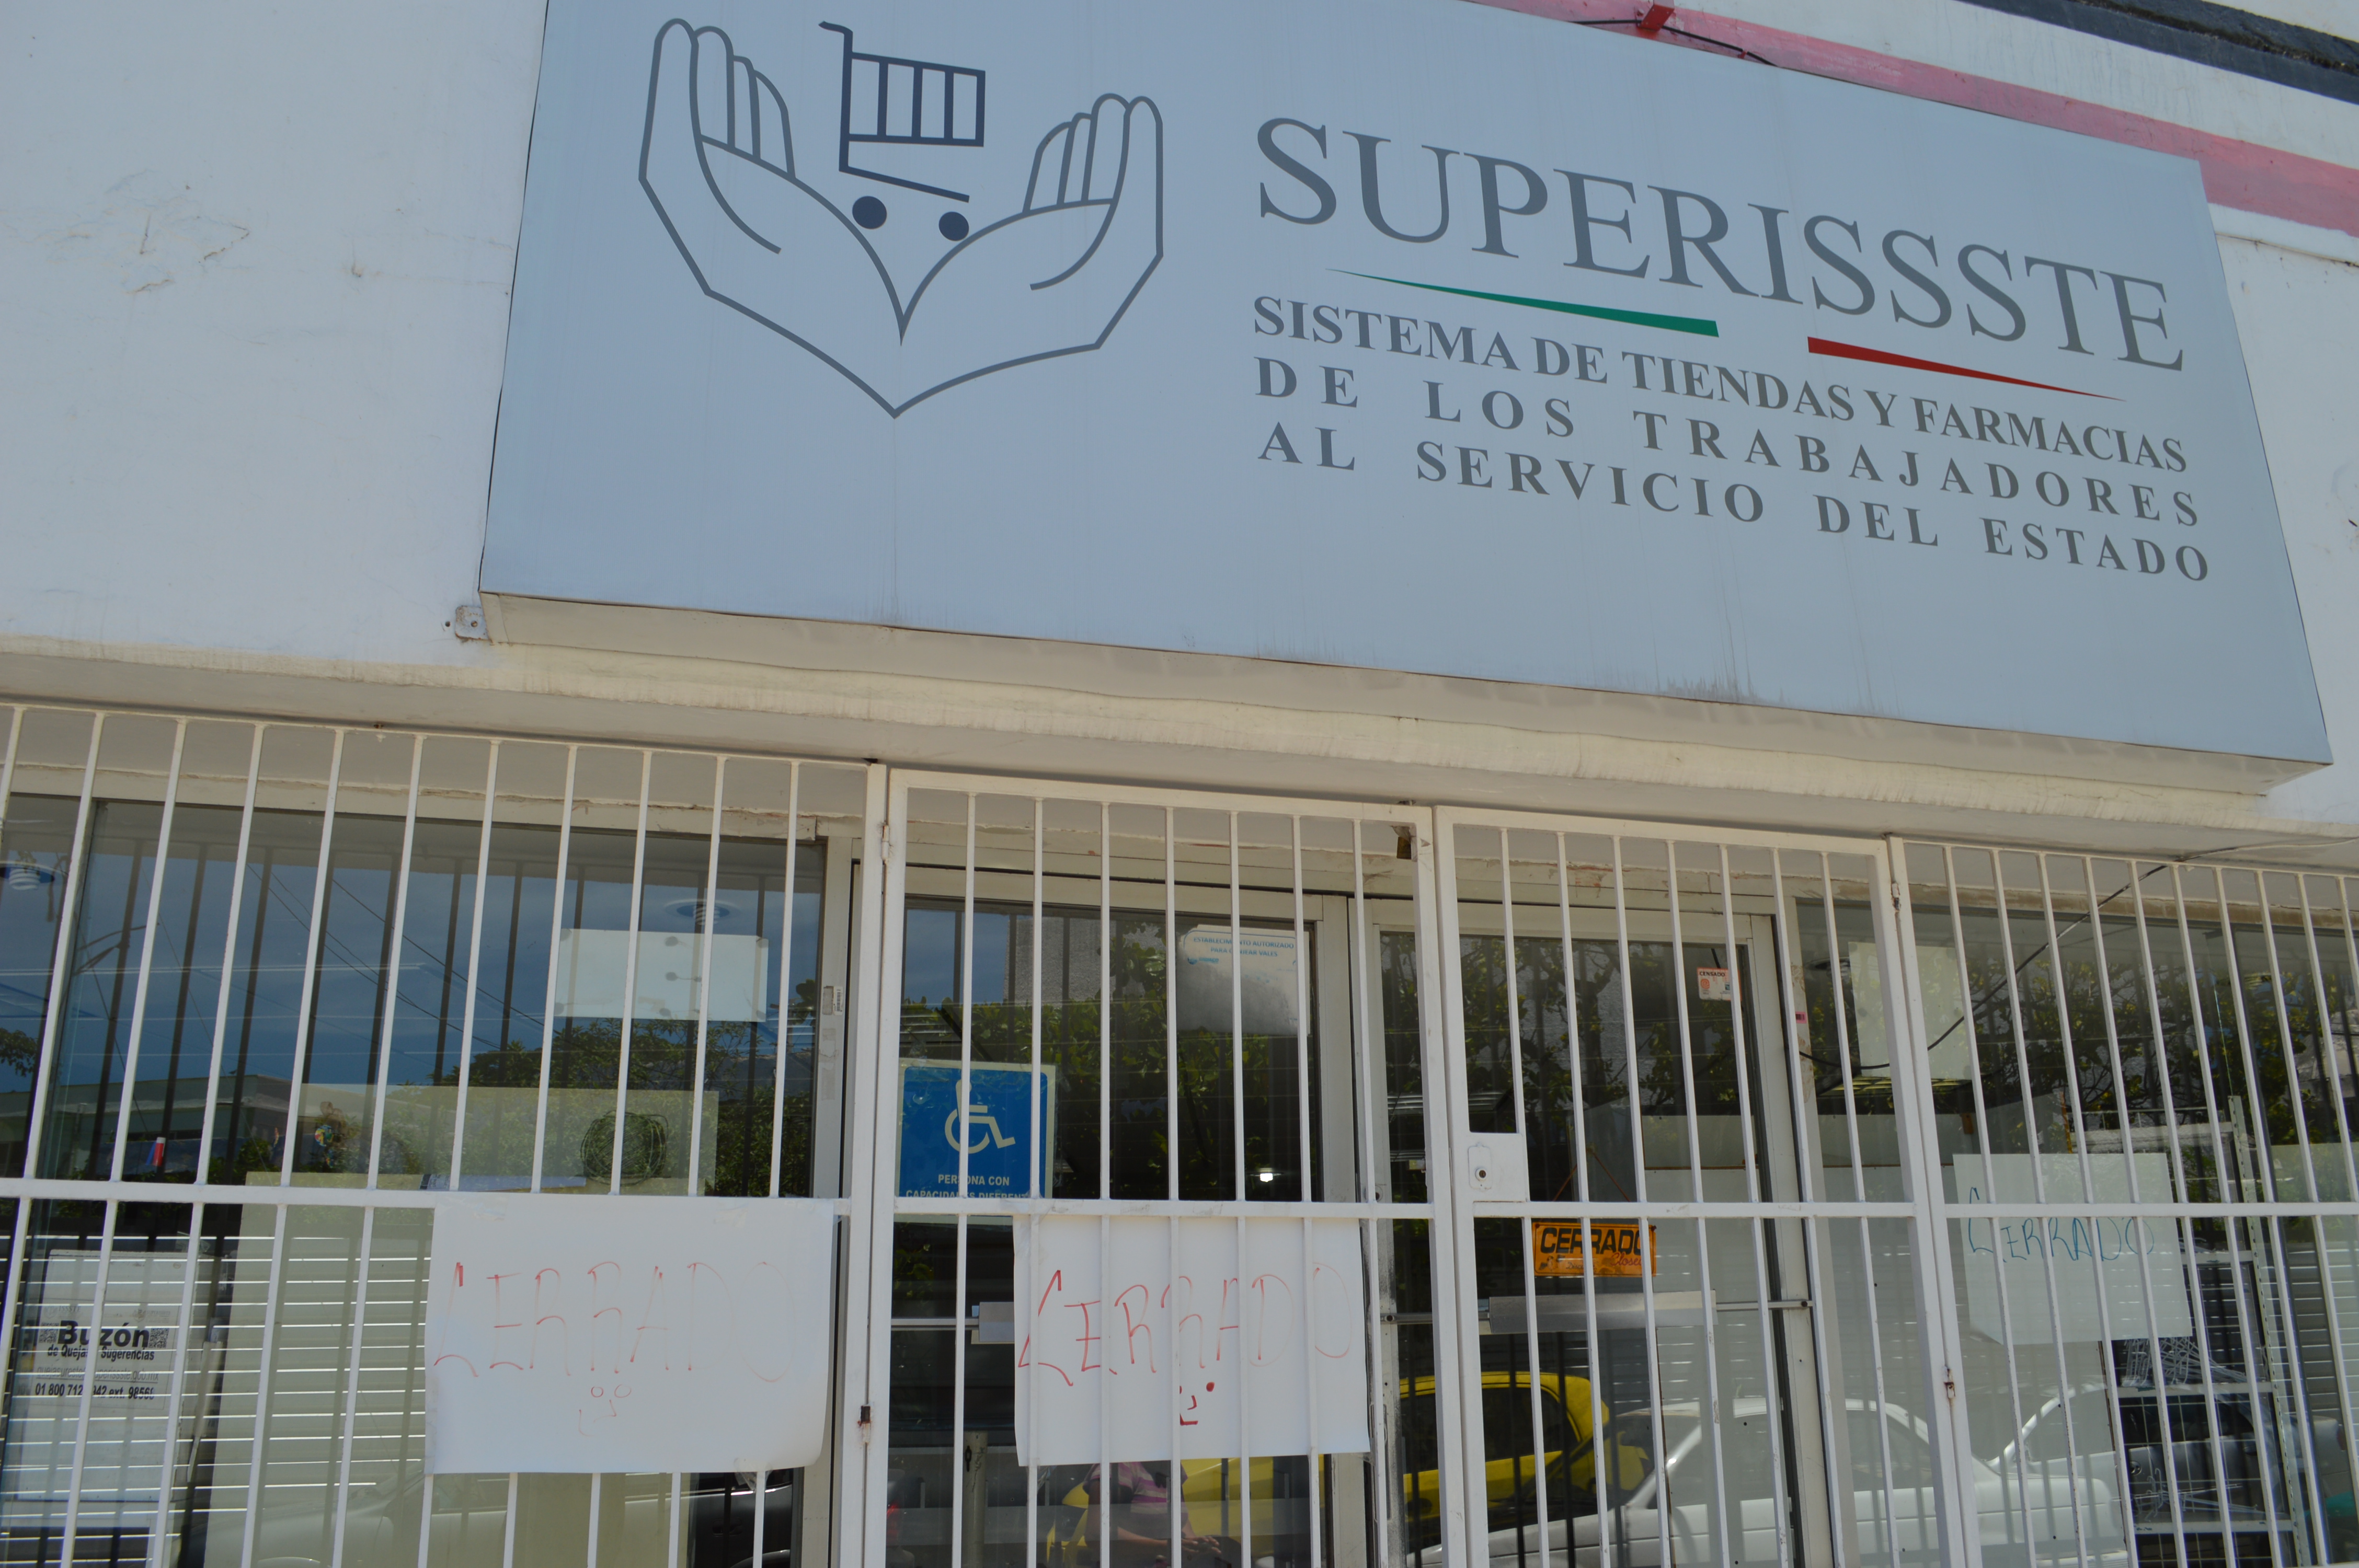 Desmantelamiento del ISSSTE: Ahora cierran farmacia y tienda - Paginabierta